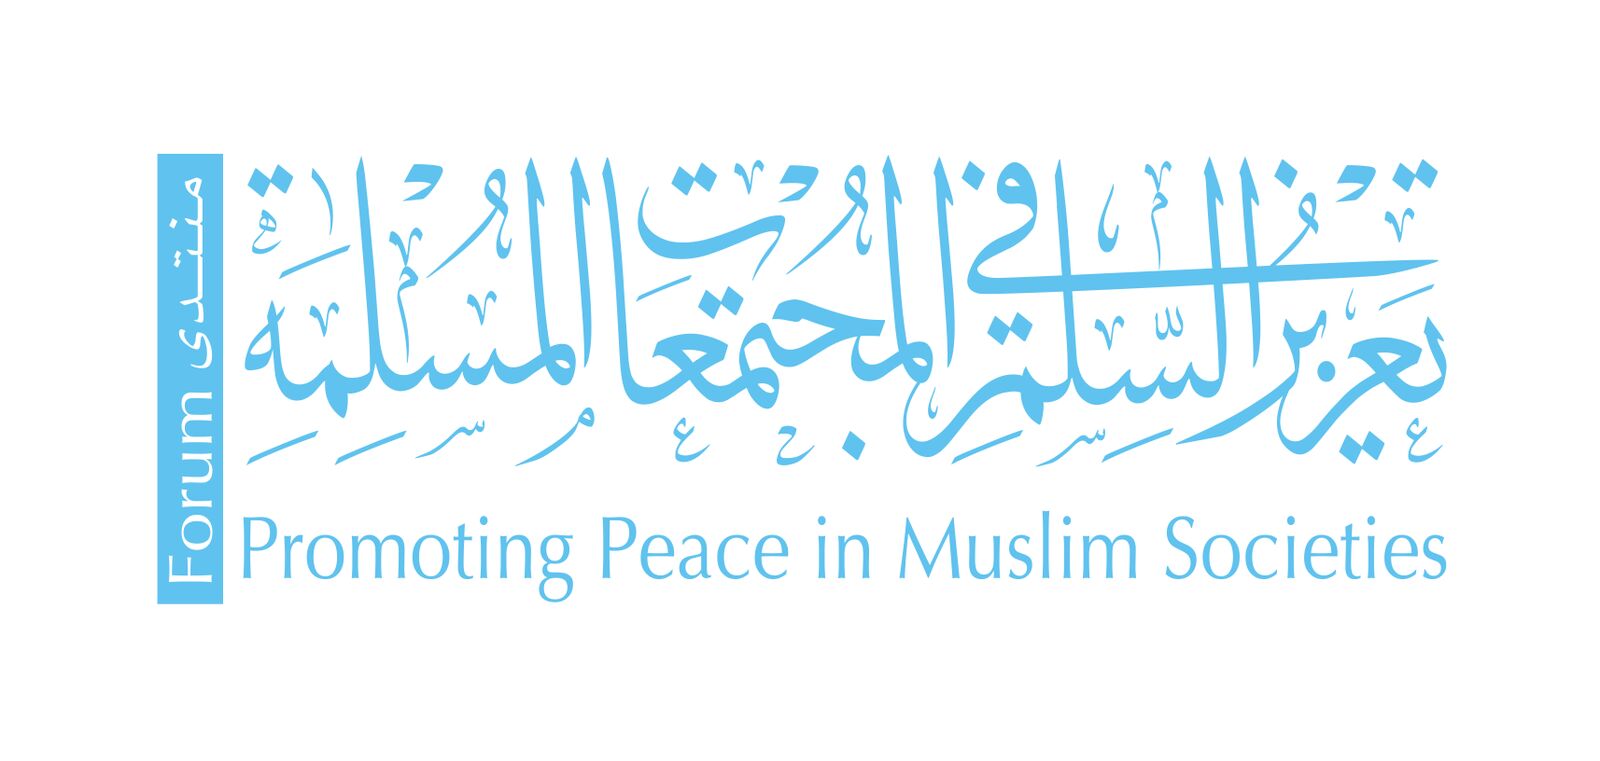 الملتقى الرابع لمنتدى تعزيز السلم في المجتمعات المسلمة - ديسمبر 2017